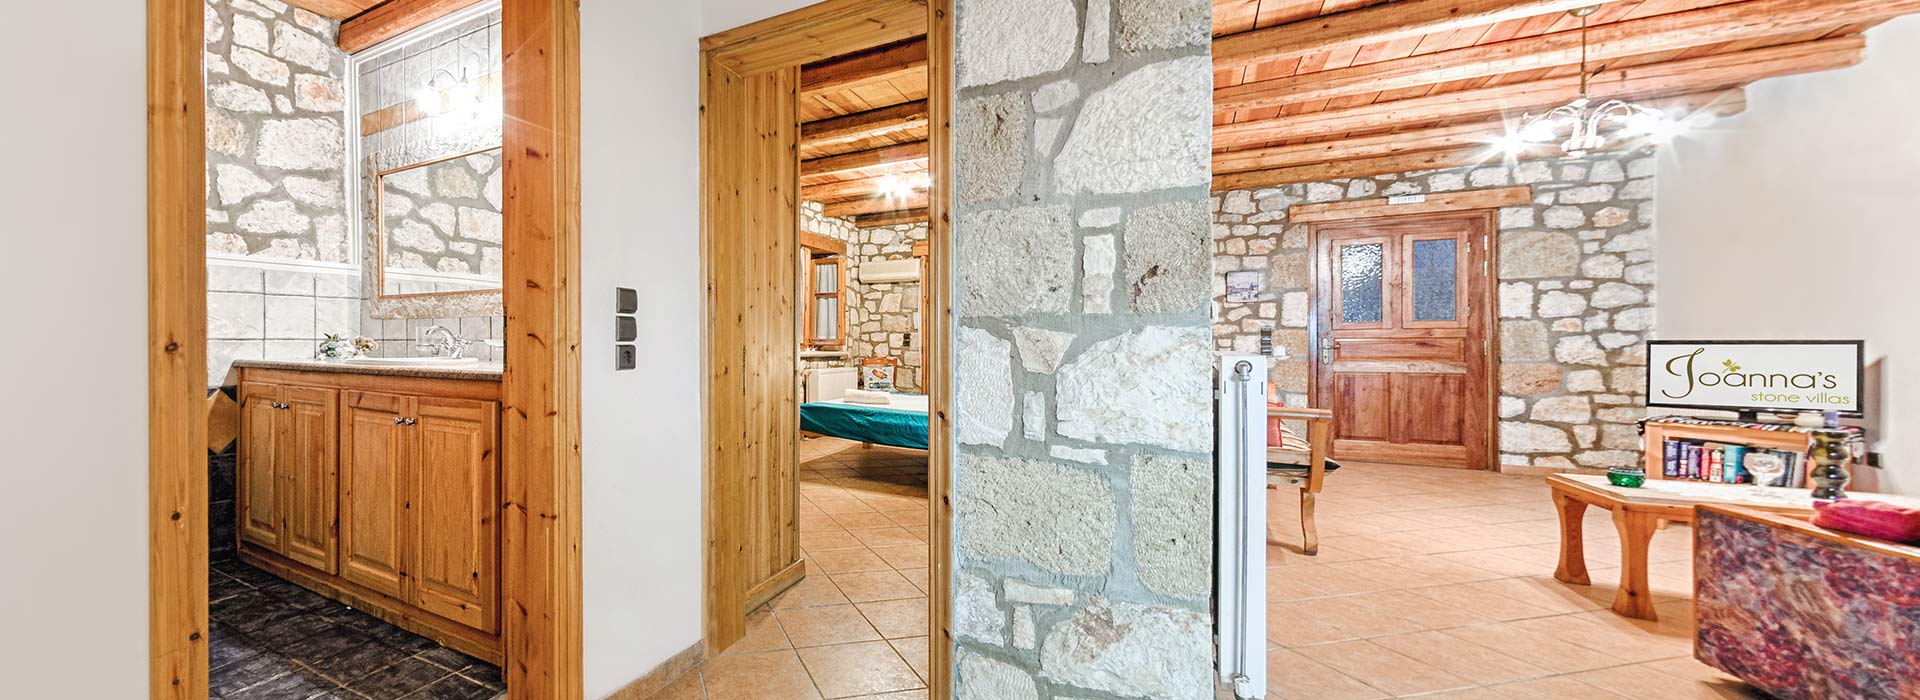 one-bedroom apartment - joanna's traditional stone villas - vasilikos zante zakynthos greece